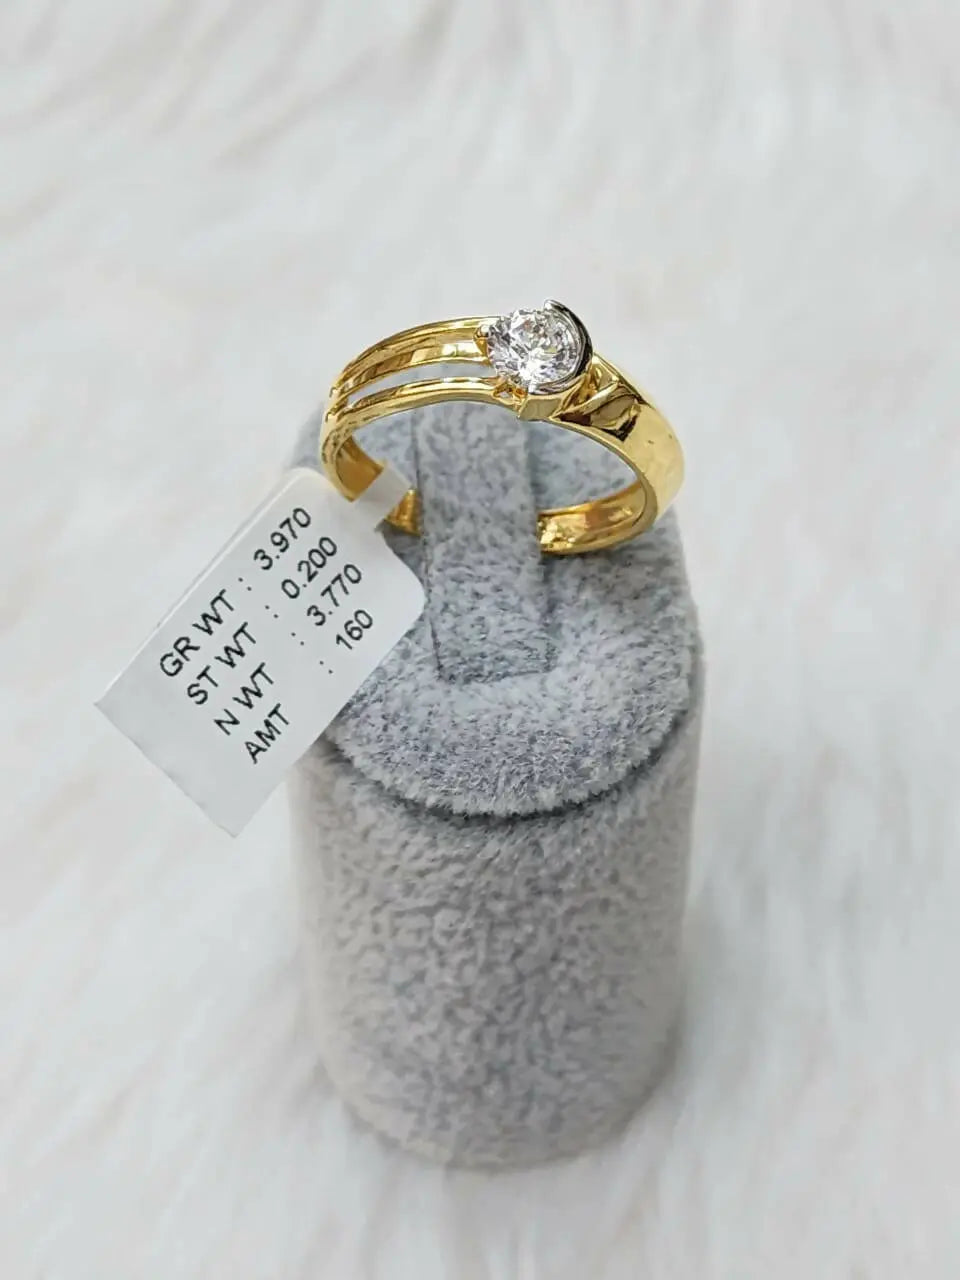 Silver Men's Moissanite Engagement Ring 1ct Center Stone – Luxus Moissanite